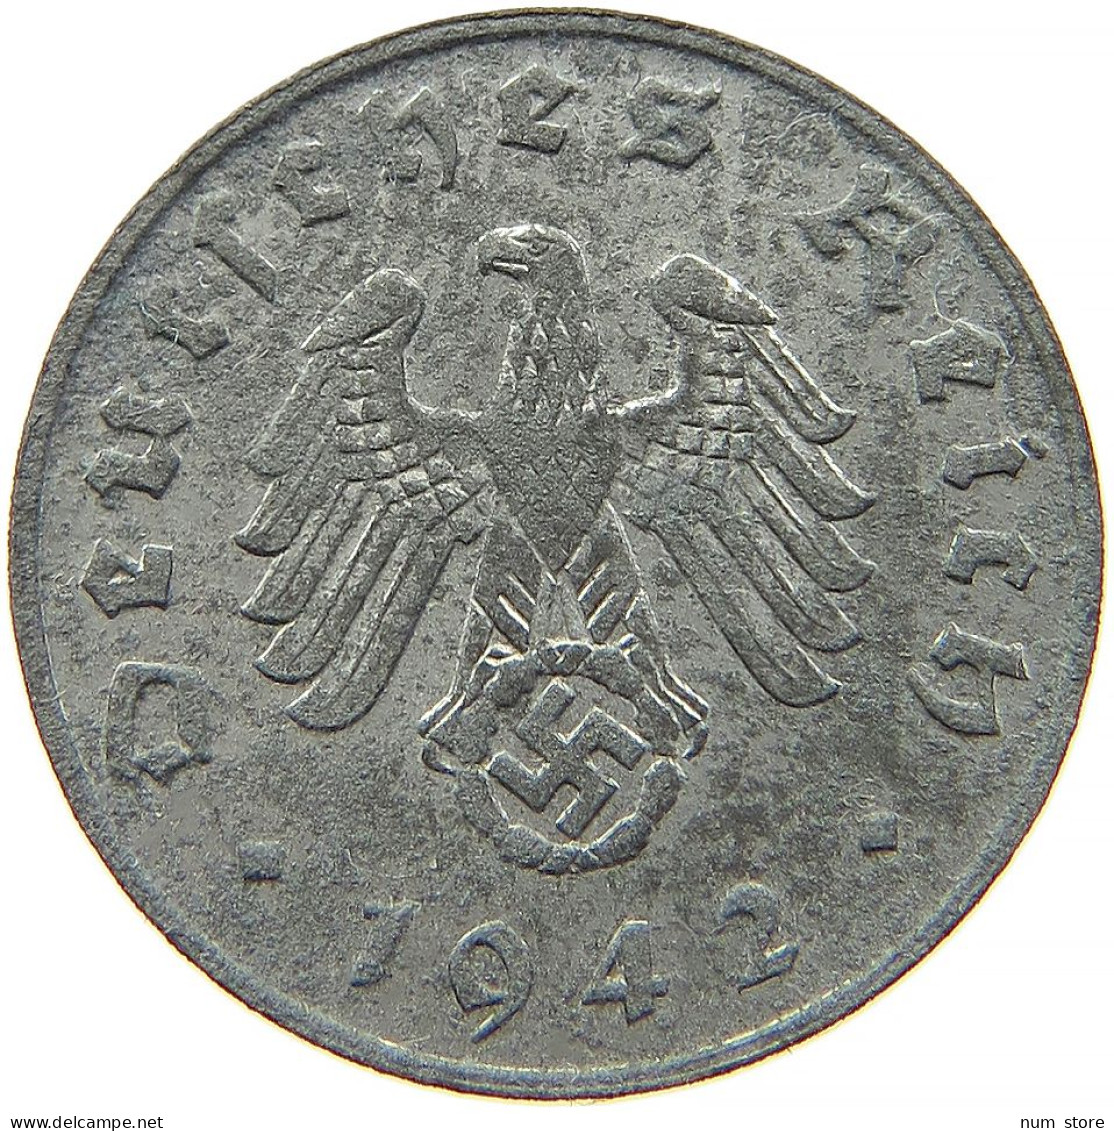 GERMANY 1 REICHSPFENNIG 1942 B #s091 1169 - 1 Reichspfennig